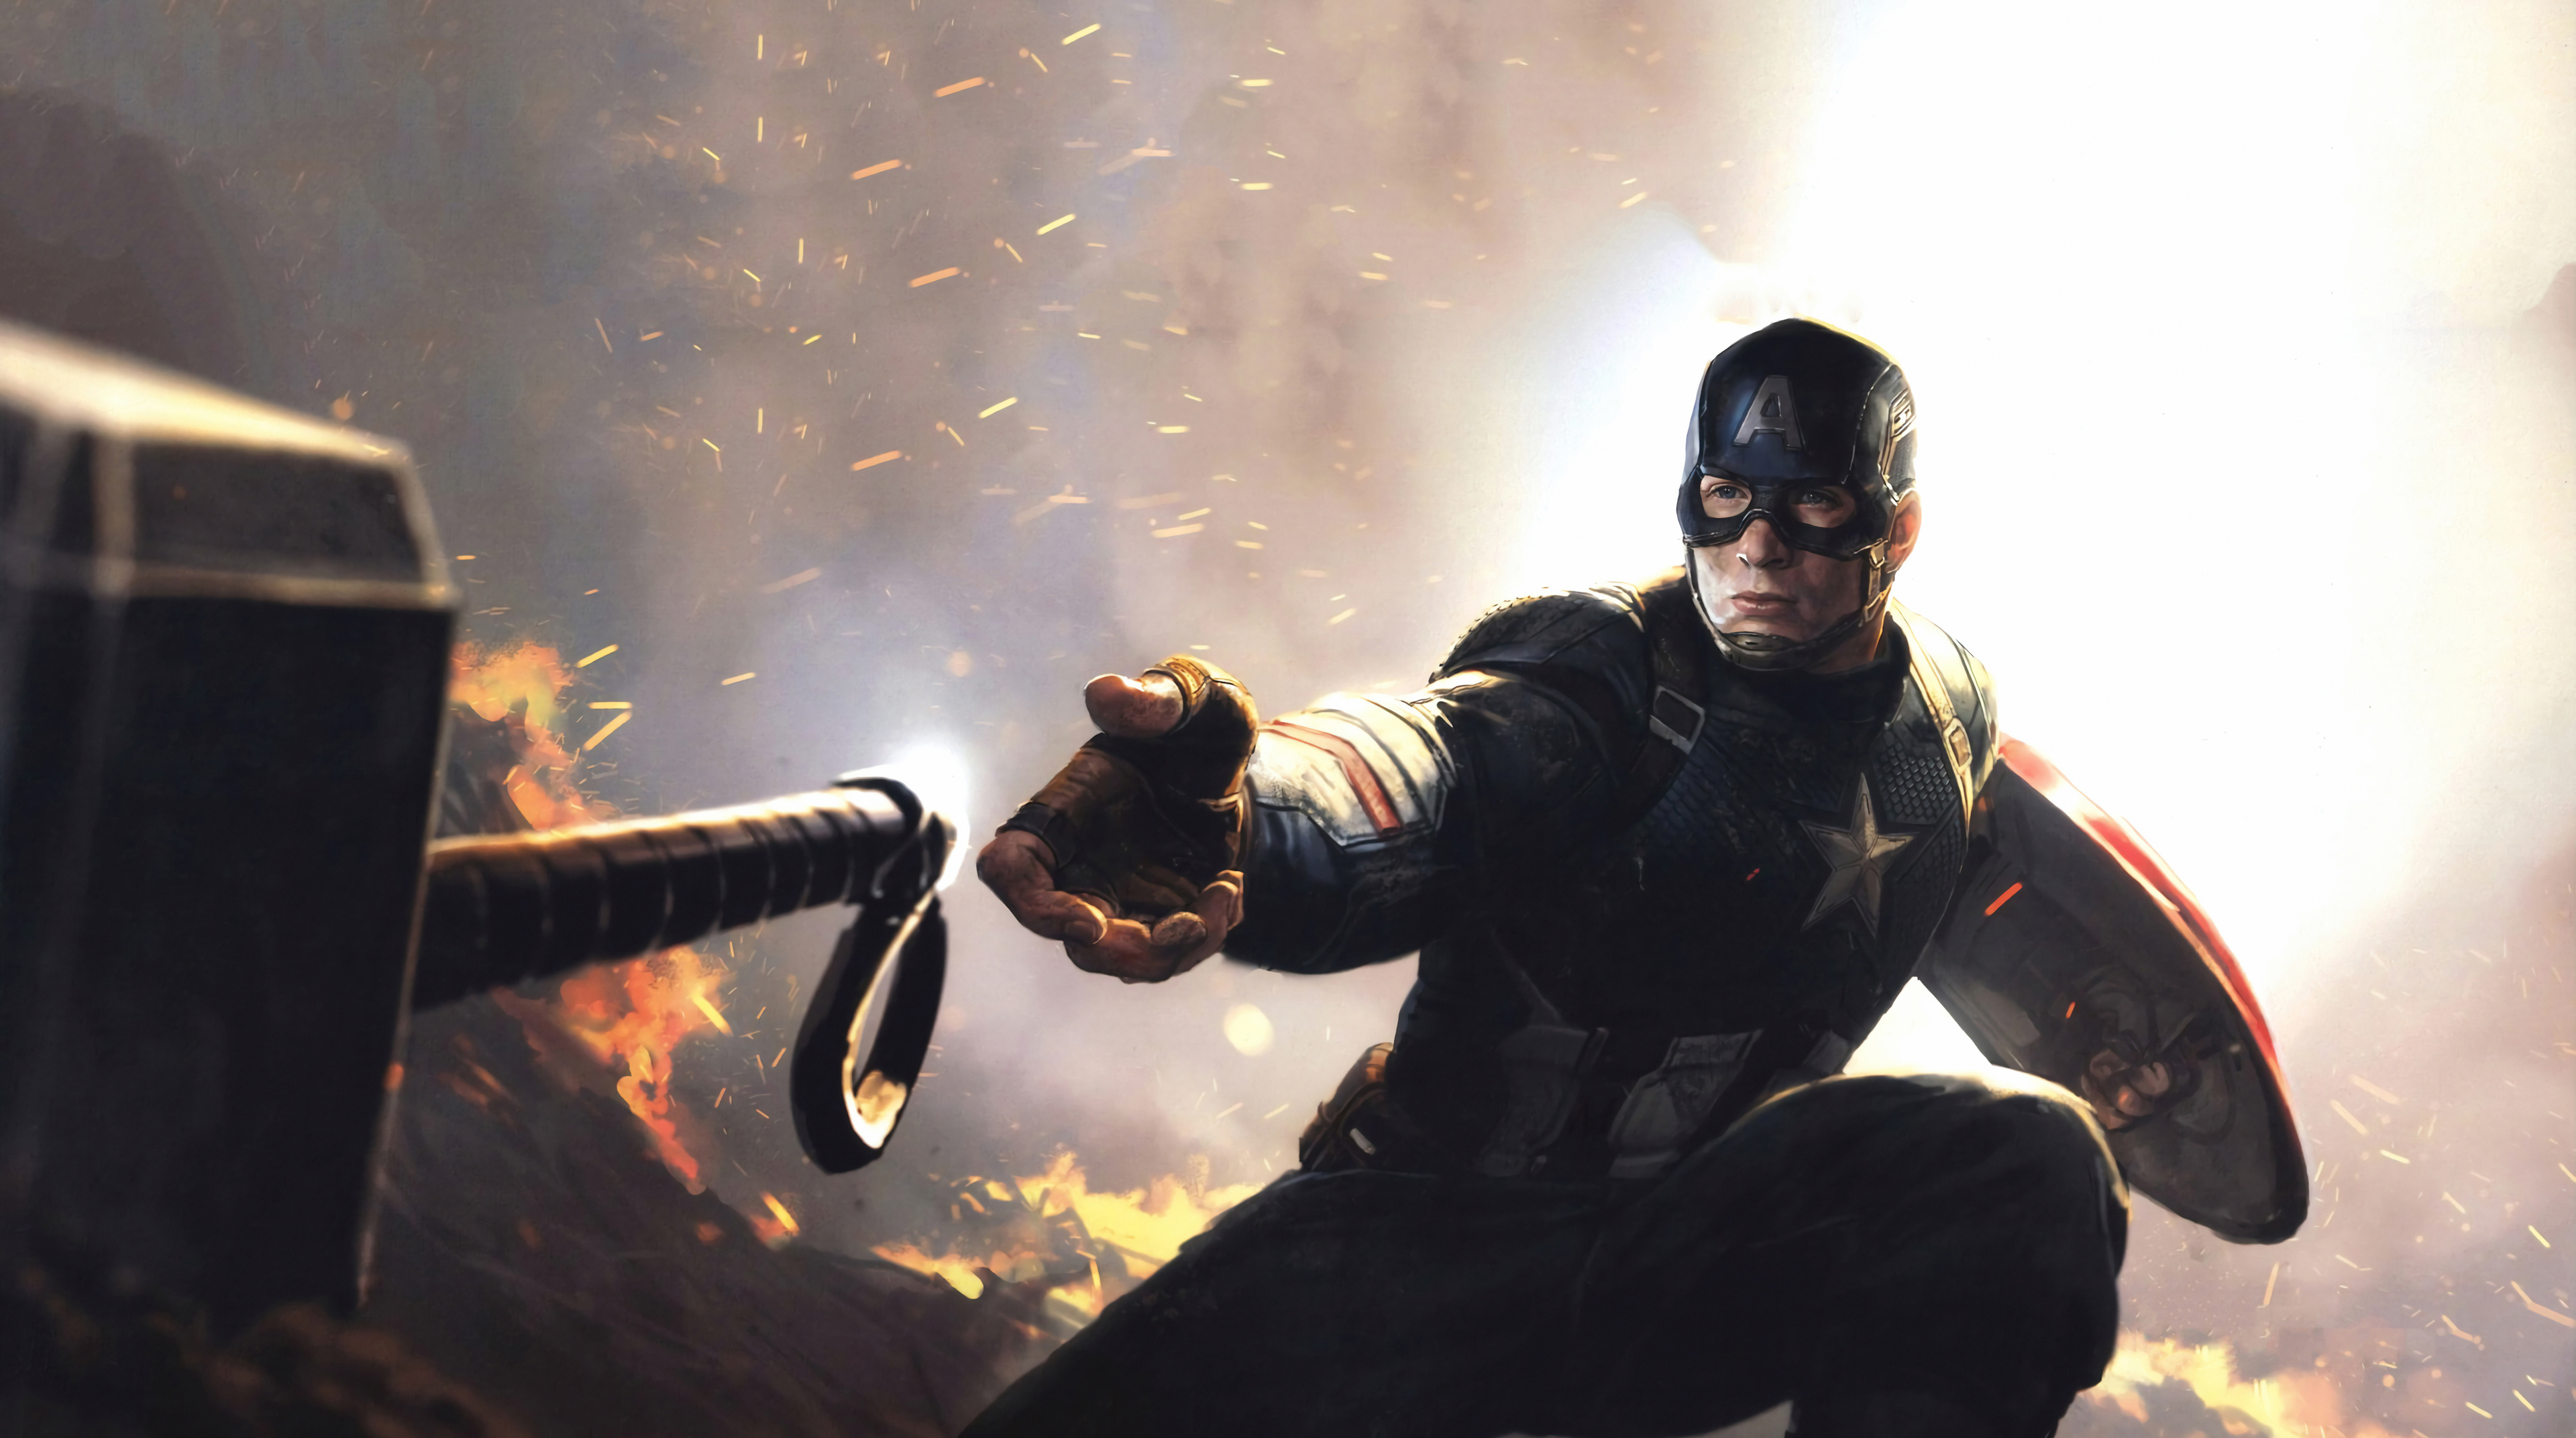 4k Captain America Mjolnir Avengers Endgame 2019, HD Superheroes, 4k